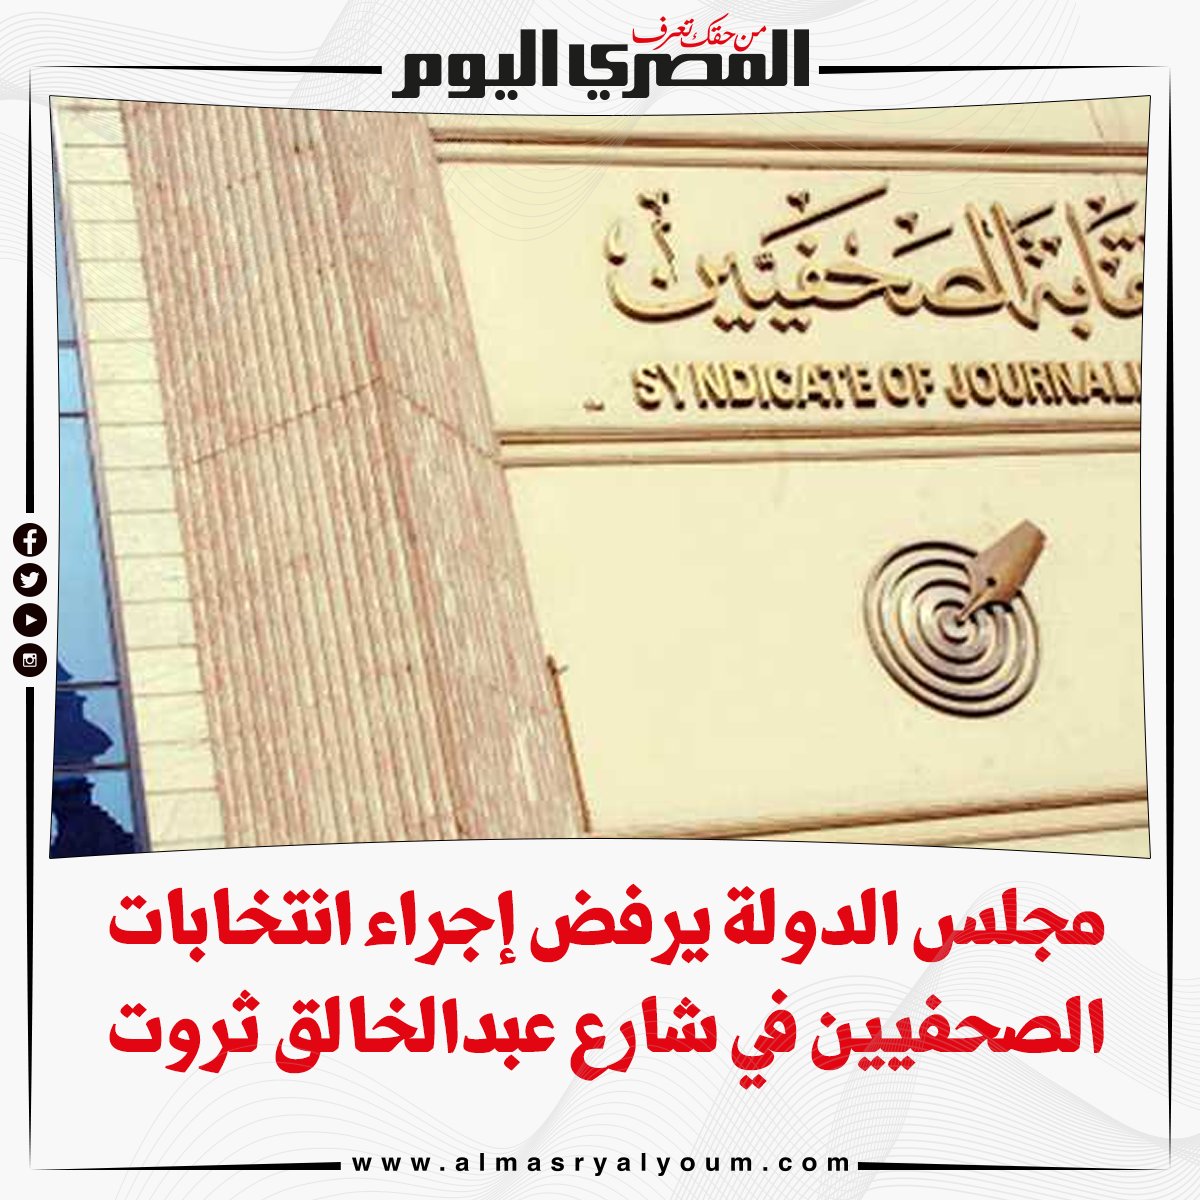 مجلس الدولة يرفض إجراء انتخابات الصحفيين في شارع عبدالخالق ثروت التفاصيل